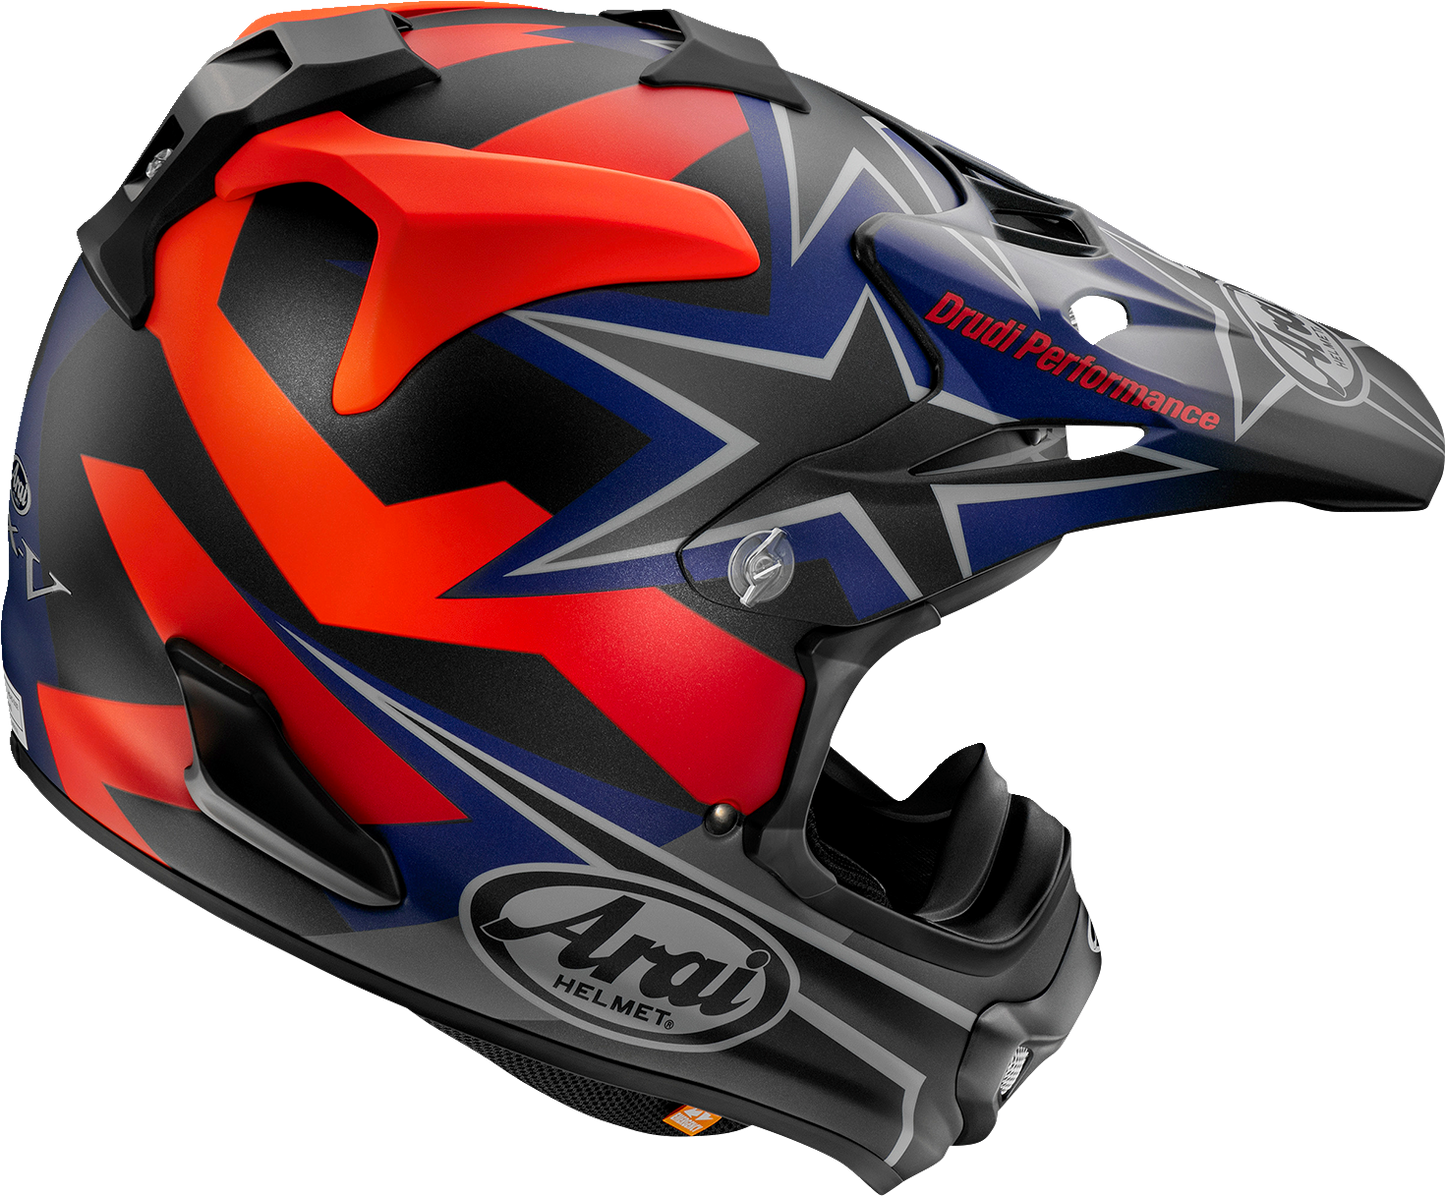 ARAI VX-Pro4 Helmet - Stars & Stripes - Black Frost - Small 0110-8207